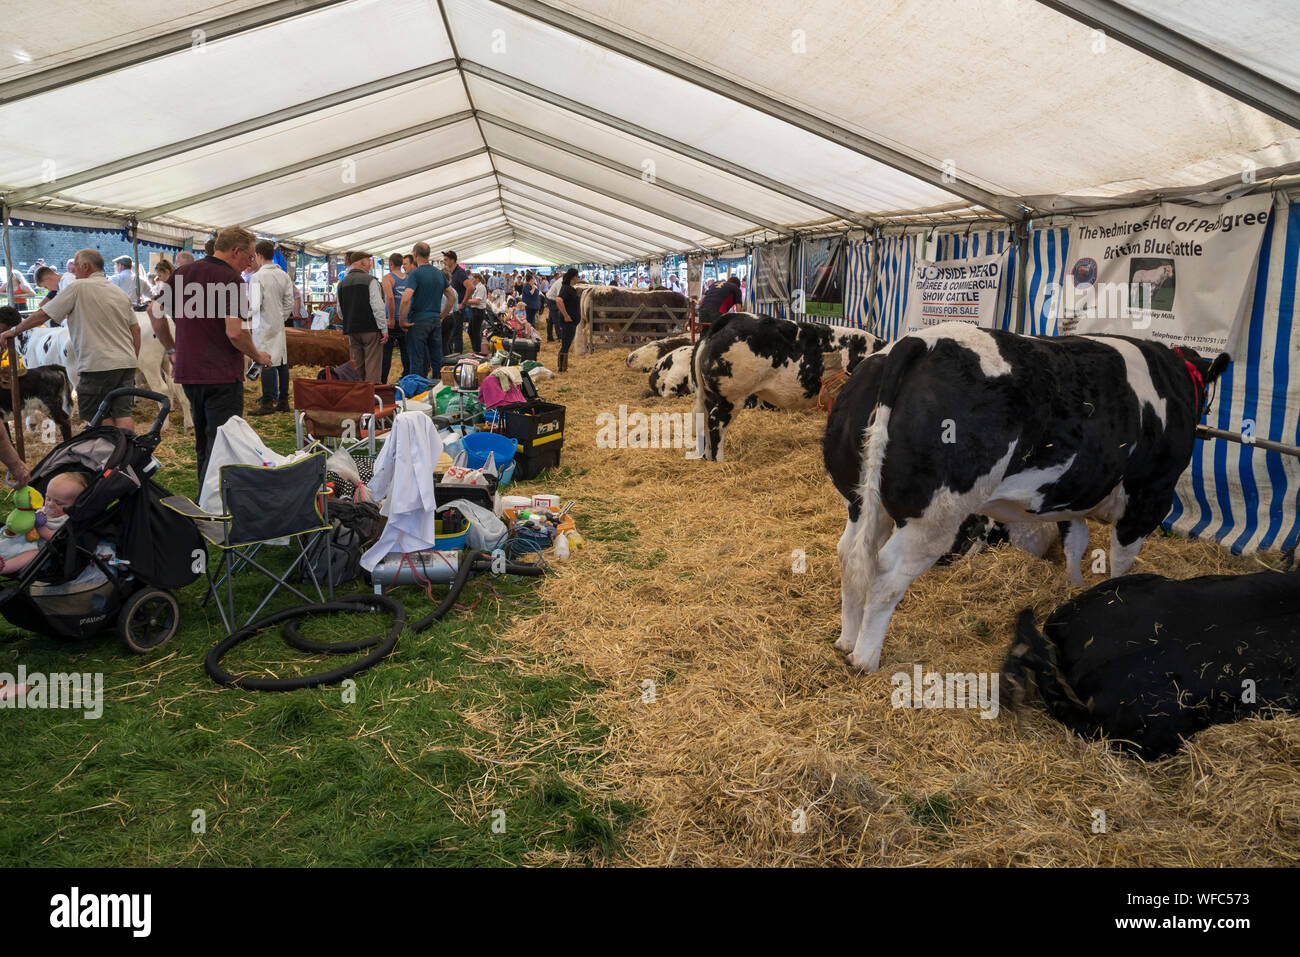 Hoffen auf den August Bank Holiday 2019 in Derbyshire, England. Junglandwirte in der Rinder Festzelt. Stockfoto